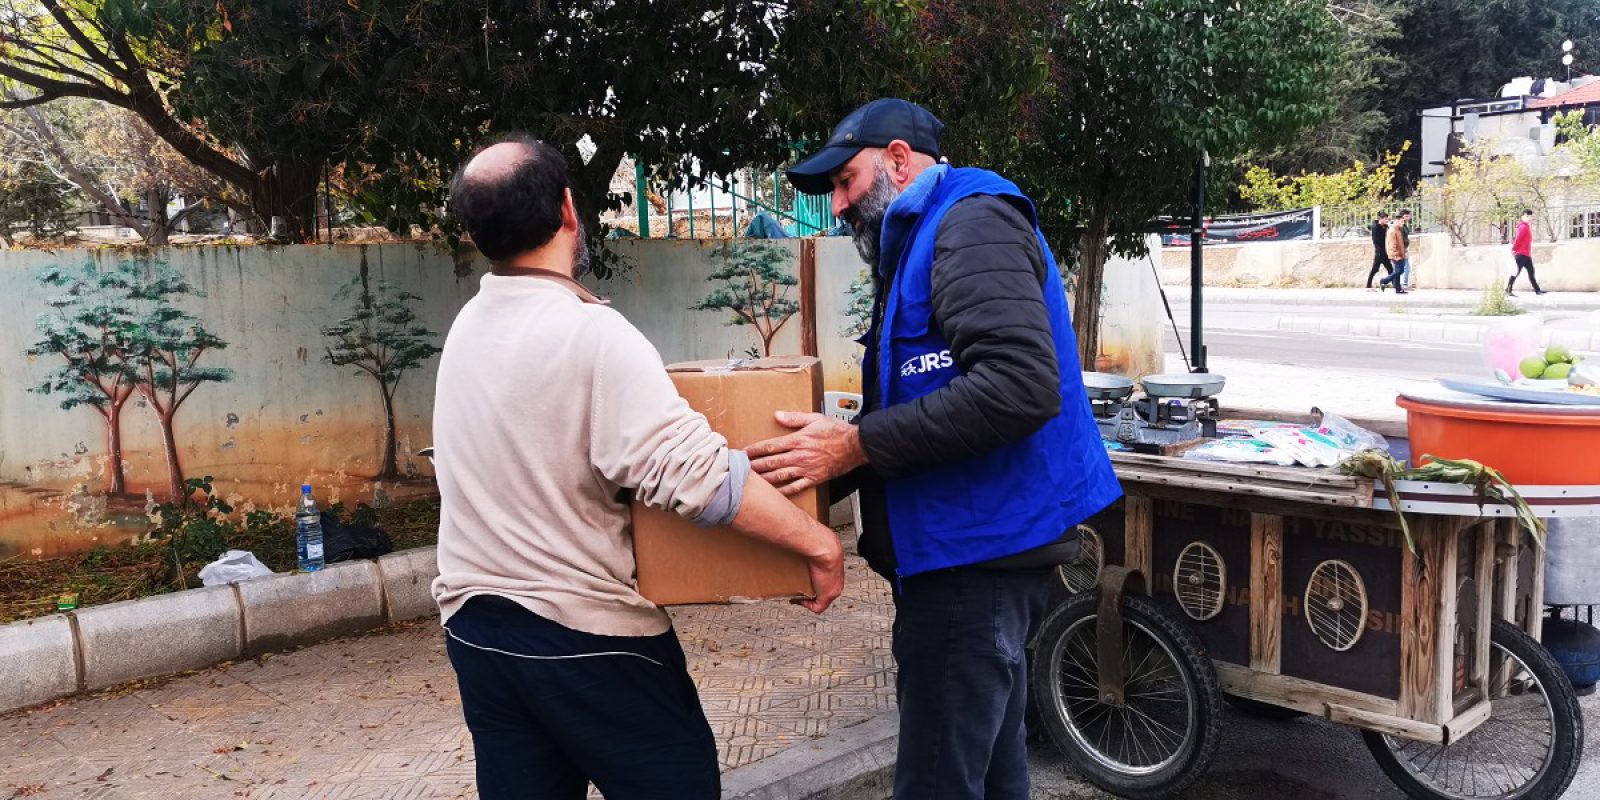 Tras los terremotos en Siria, el personal del JRS distribuyó alimentos y otros artículos a las familias necesitadas. Gerry Baumgartner, jesuita en formación, cuenta su experiencia de esperanza y solidaridad en Siria al servicio de las personas desplazadas.